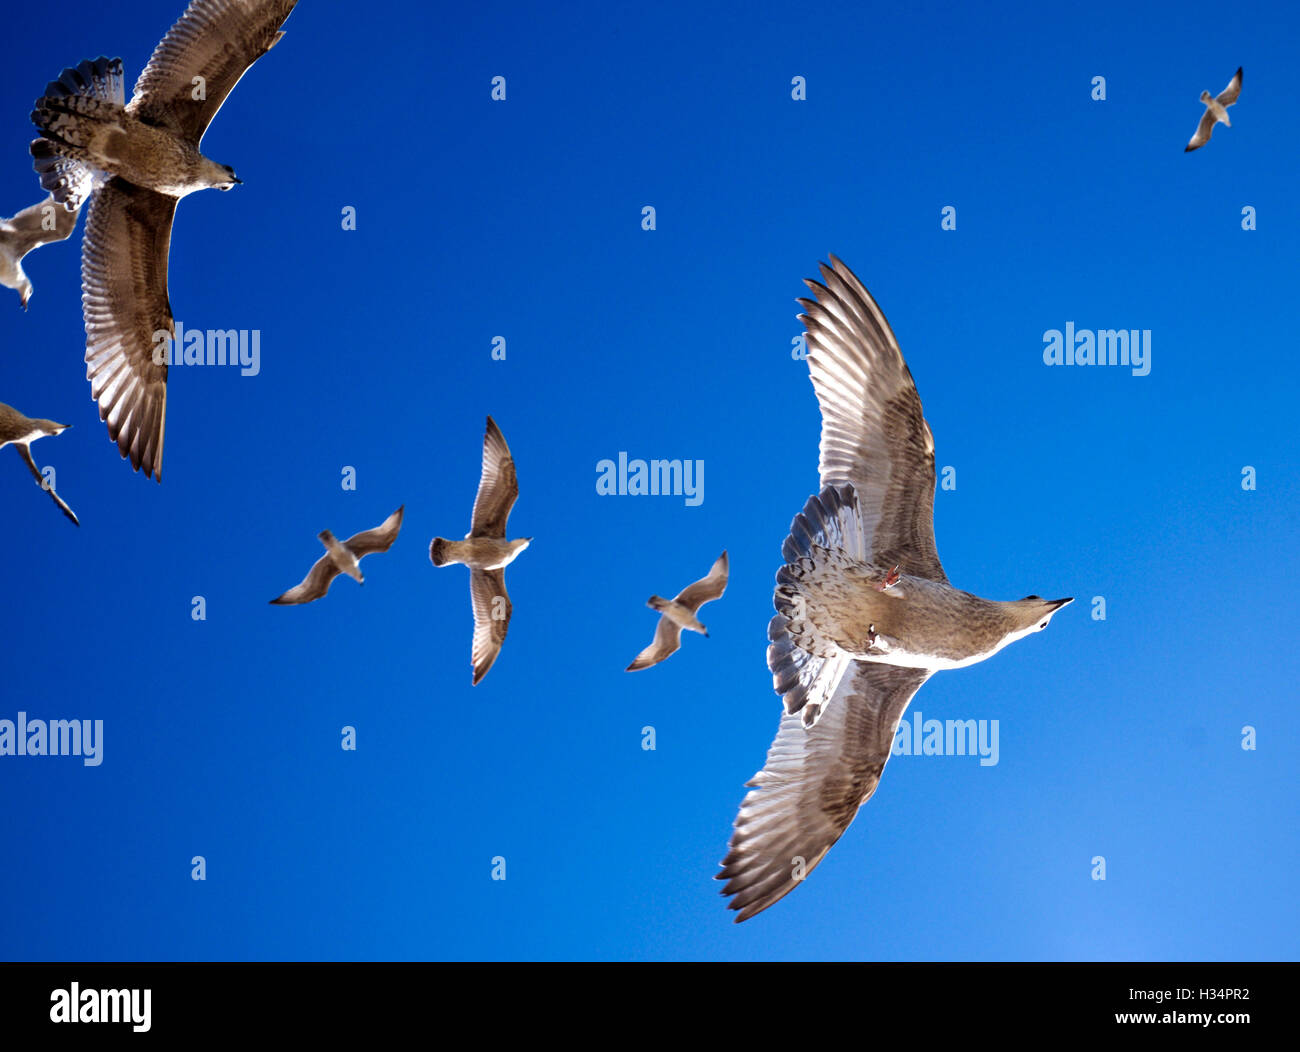 Gabbiani volare direttamente in testa in una linea, bella la marcatura sui gabbiani contro un suggestivo cielo blu, splendida fauna selvatica. Foto Stock